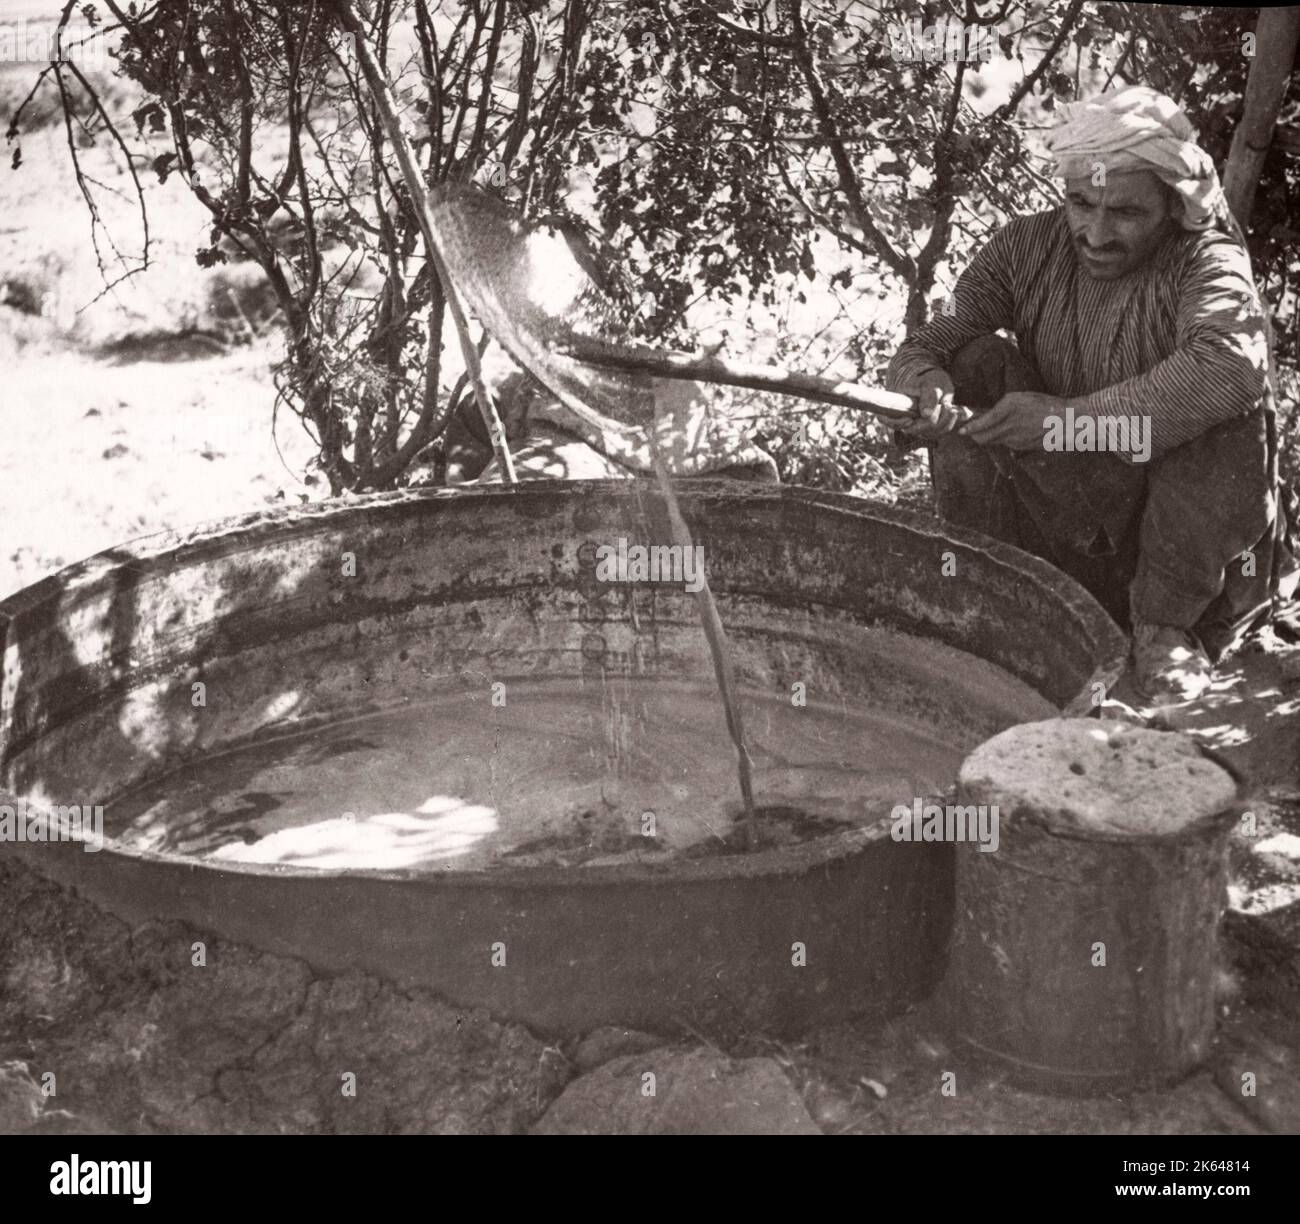 1943 Syrie - faire bouillir des raisins à Make Arak liqour Photographie par un officier de recrutement de l'armée britannique stationnés en Afrique de l'est et au Moyen-Orient pendant la Seconde Guerre mondiale Banque D'Images